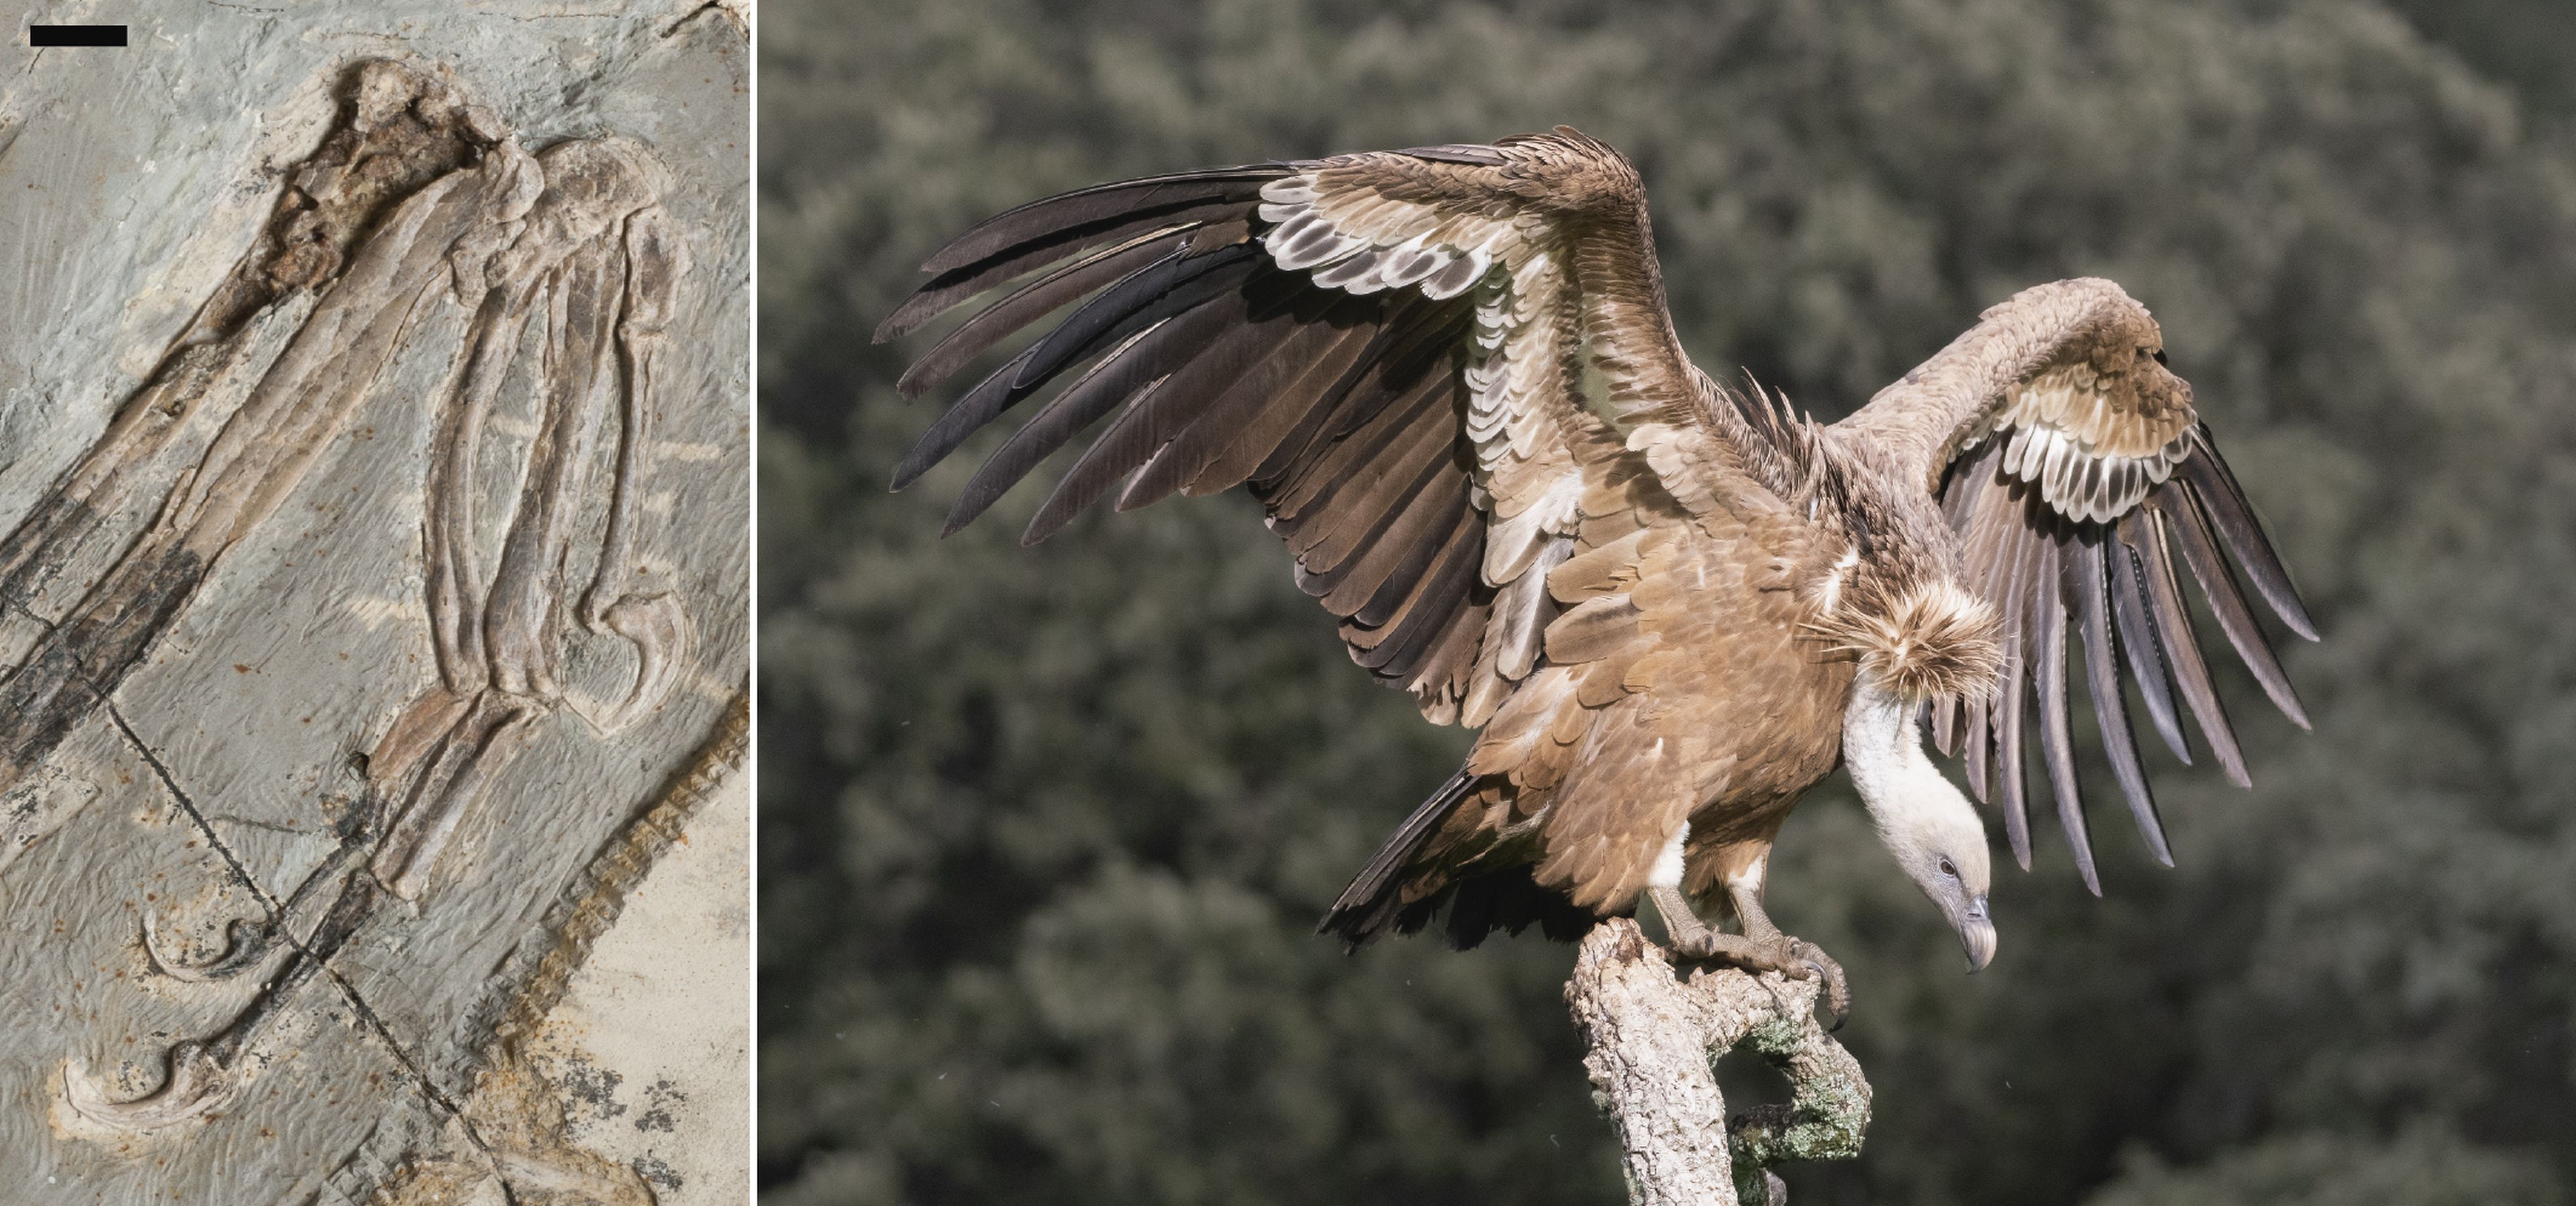 A la izquierda, el fósil de la mano prensil y con garras de una de las primeras aves Mesozoicas, 'Jeholornis curvipes'. A la derecha, un buitre leonado ('Gyps fulvus').